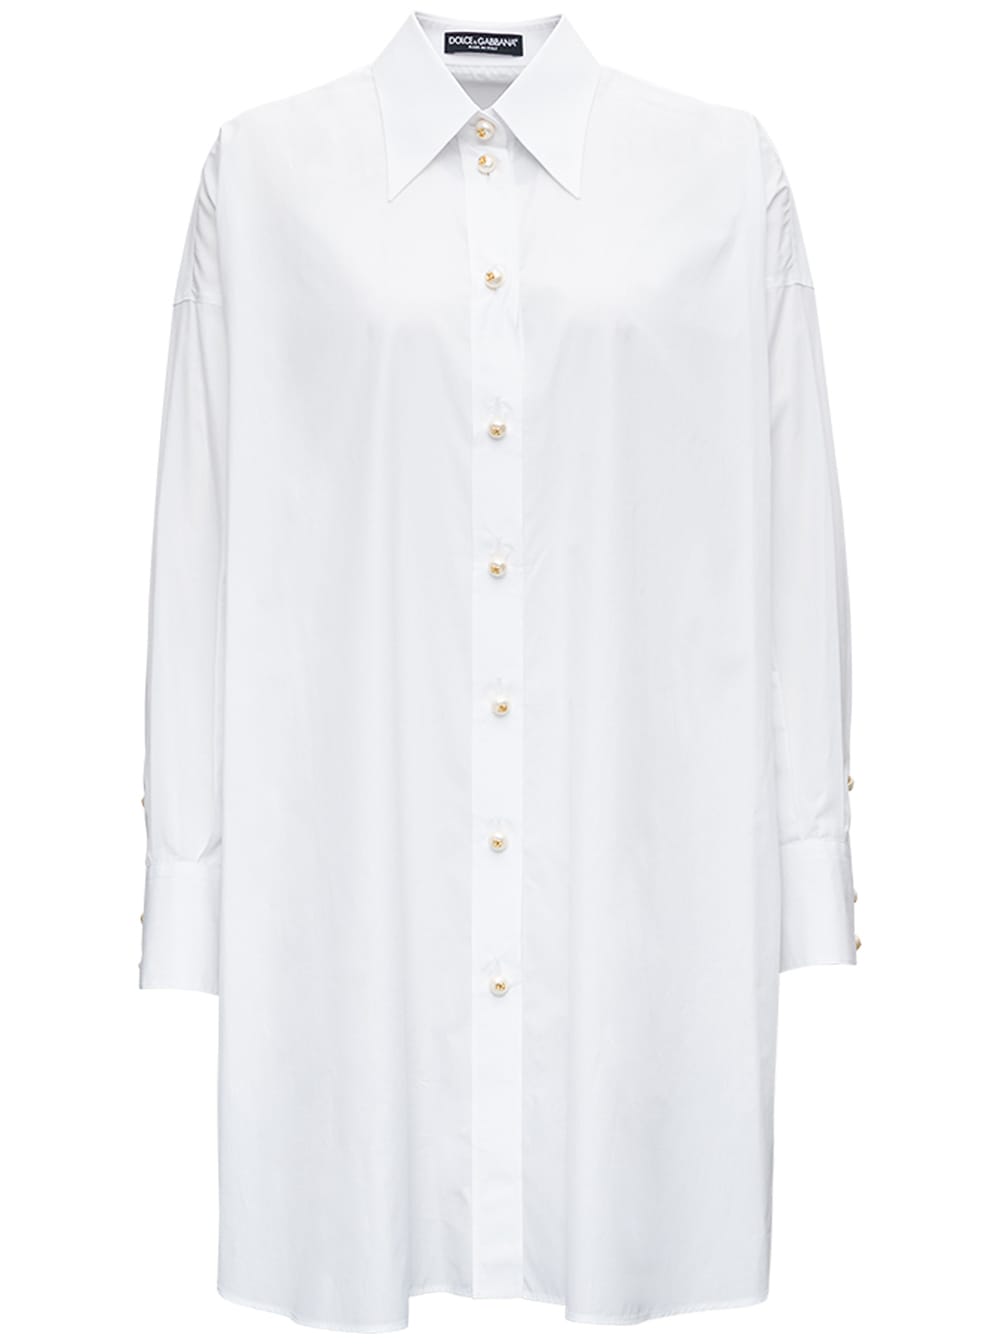 Dolce & Gabbana Oversized White Cotton Poplin Shirt